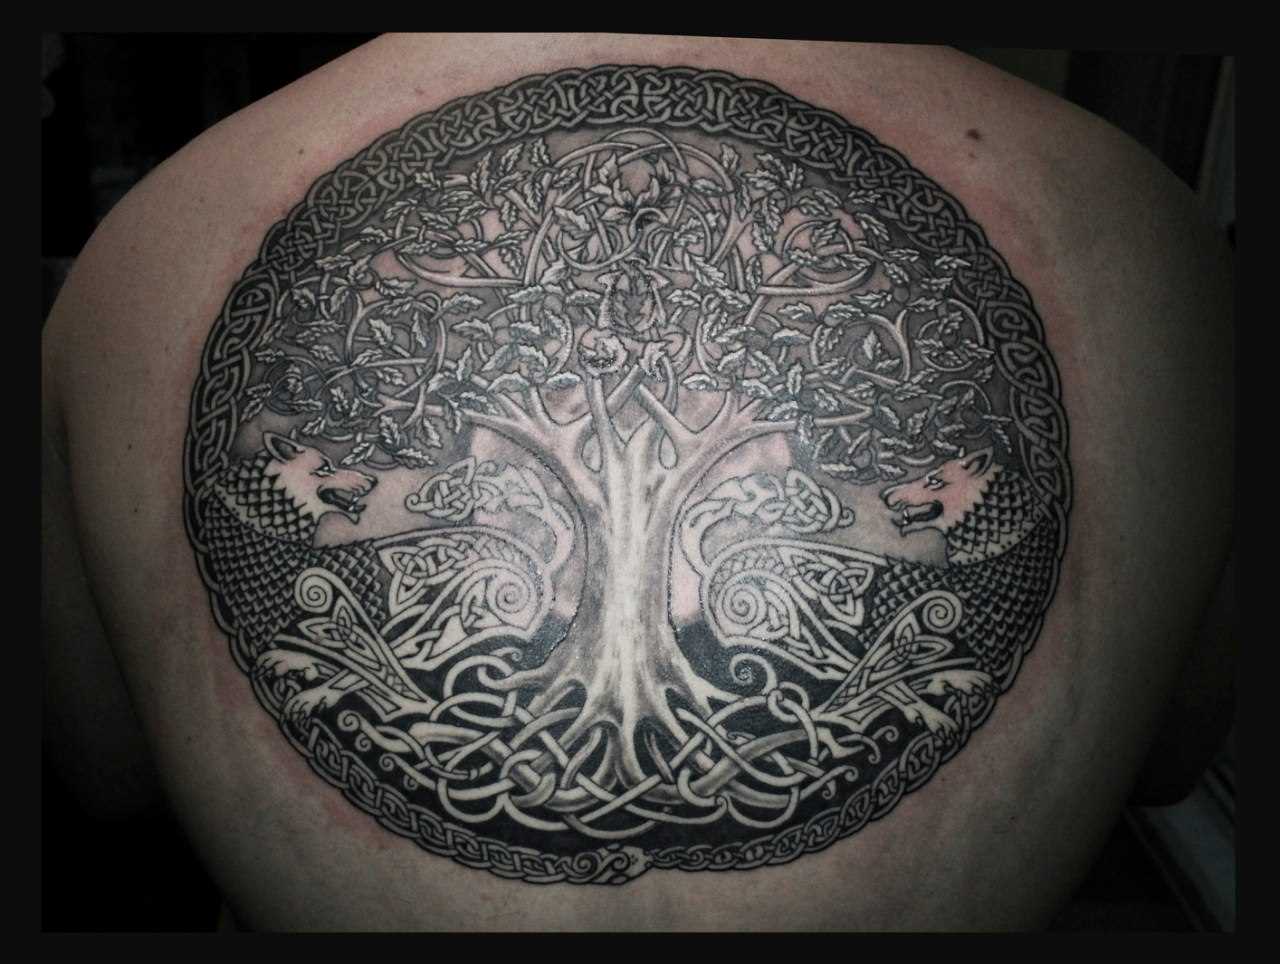 A tatuagem nas costas do cara - a árvore